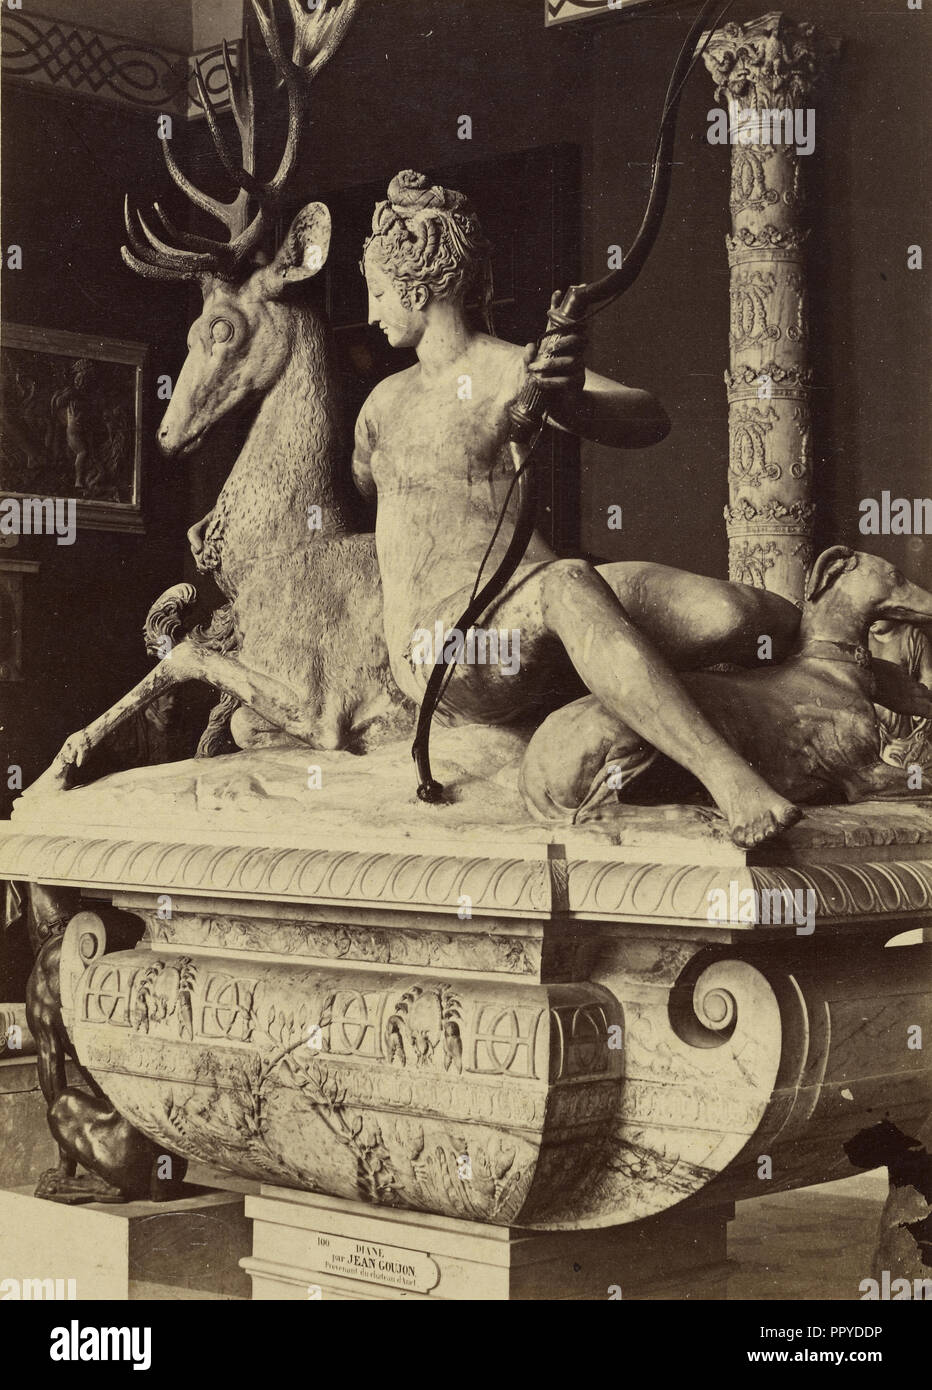 Diana; Tommaso Cuccioni, Italian, 1790 - 1864, Paris, France; about 1852 - 1864; Albumen silver print Stock Photo